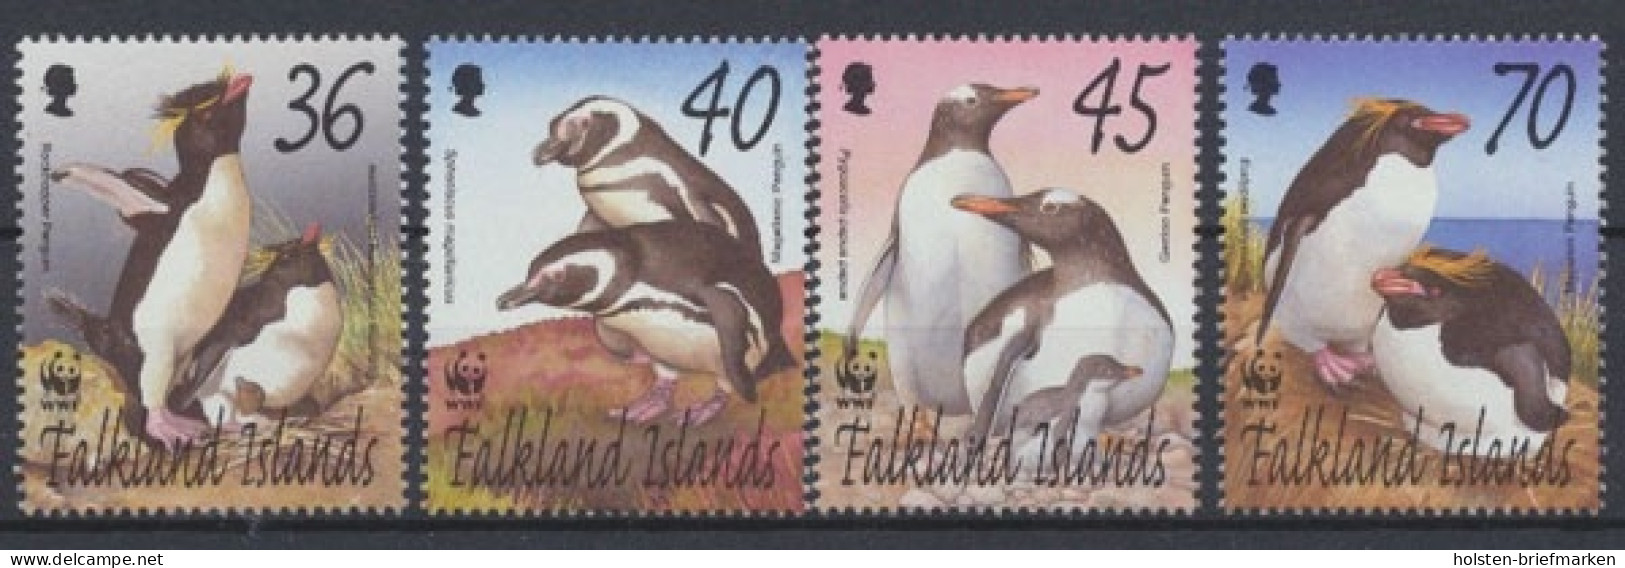 Falklandinseln, Michel Nr. 855-858, Postfrisch/MNH - Falkland